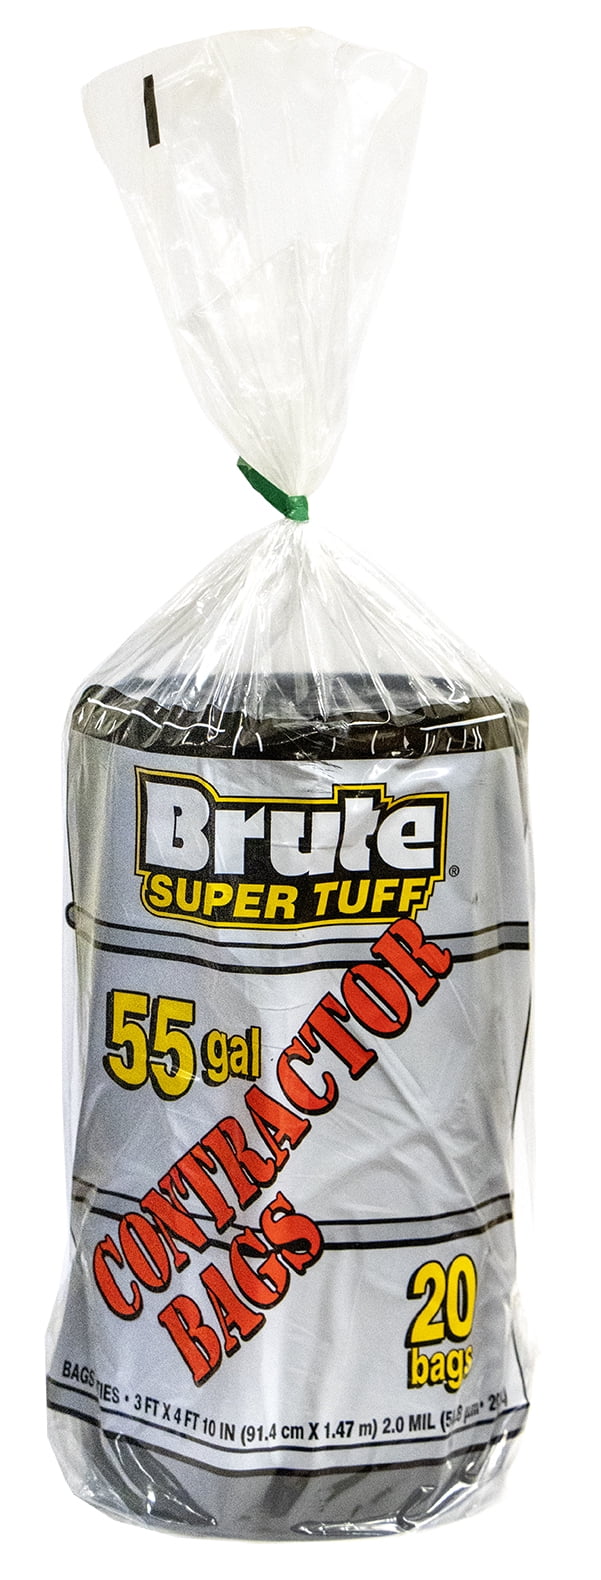 Brute Super Tuff 45 Gallon Contracter Trash Bags - Shop Trash Bags at H-E-B